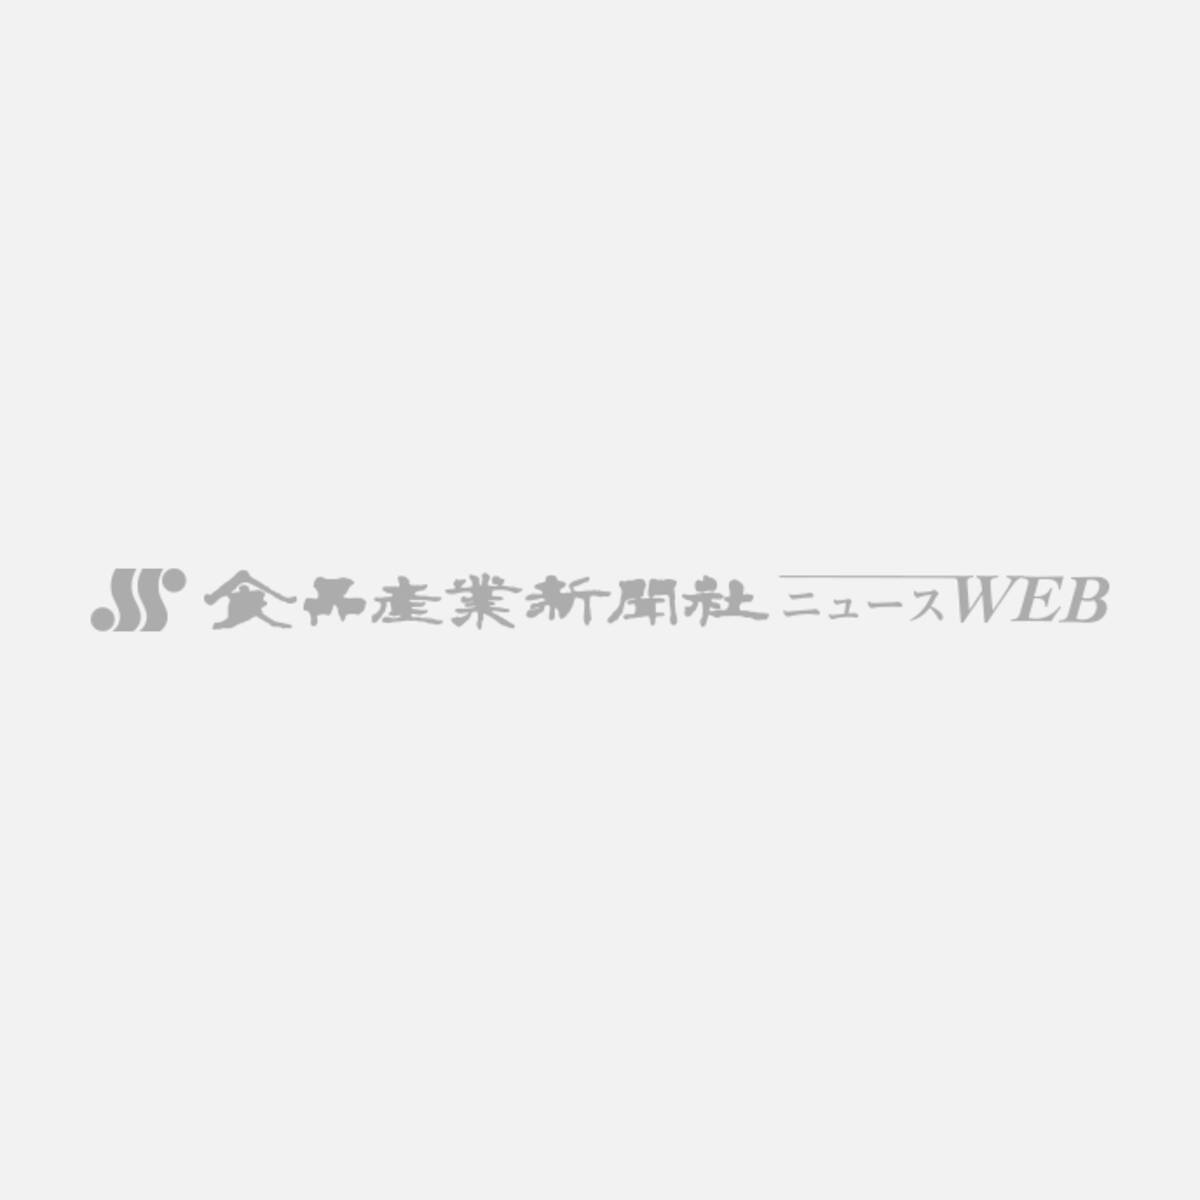 2月13日の福島県沖地震 ハム ソーメーカーに被害なし 宮城県で鶏舎破損 8羽死亡 21年2月16日 エキサイトニュース